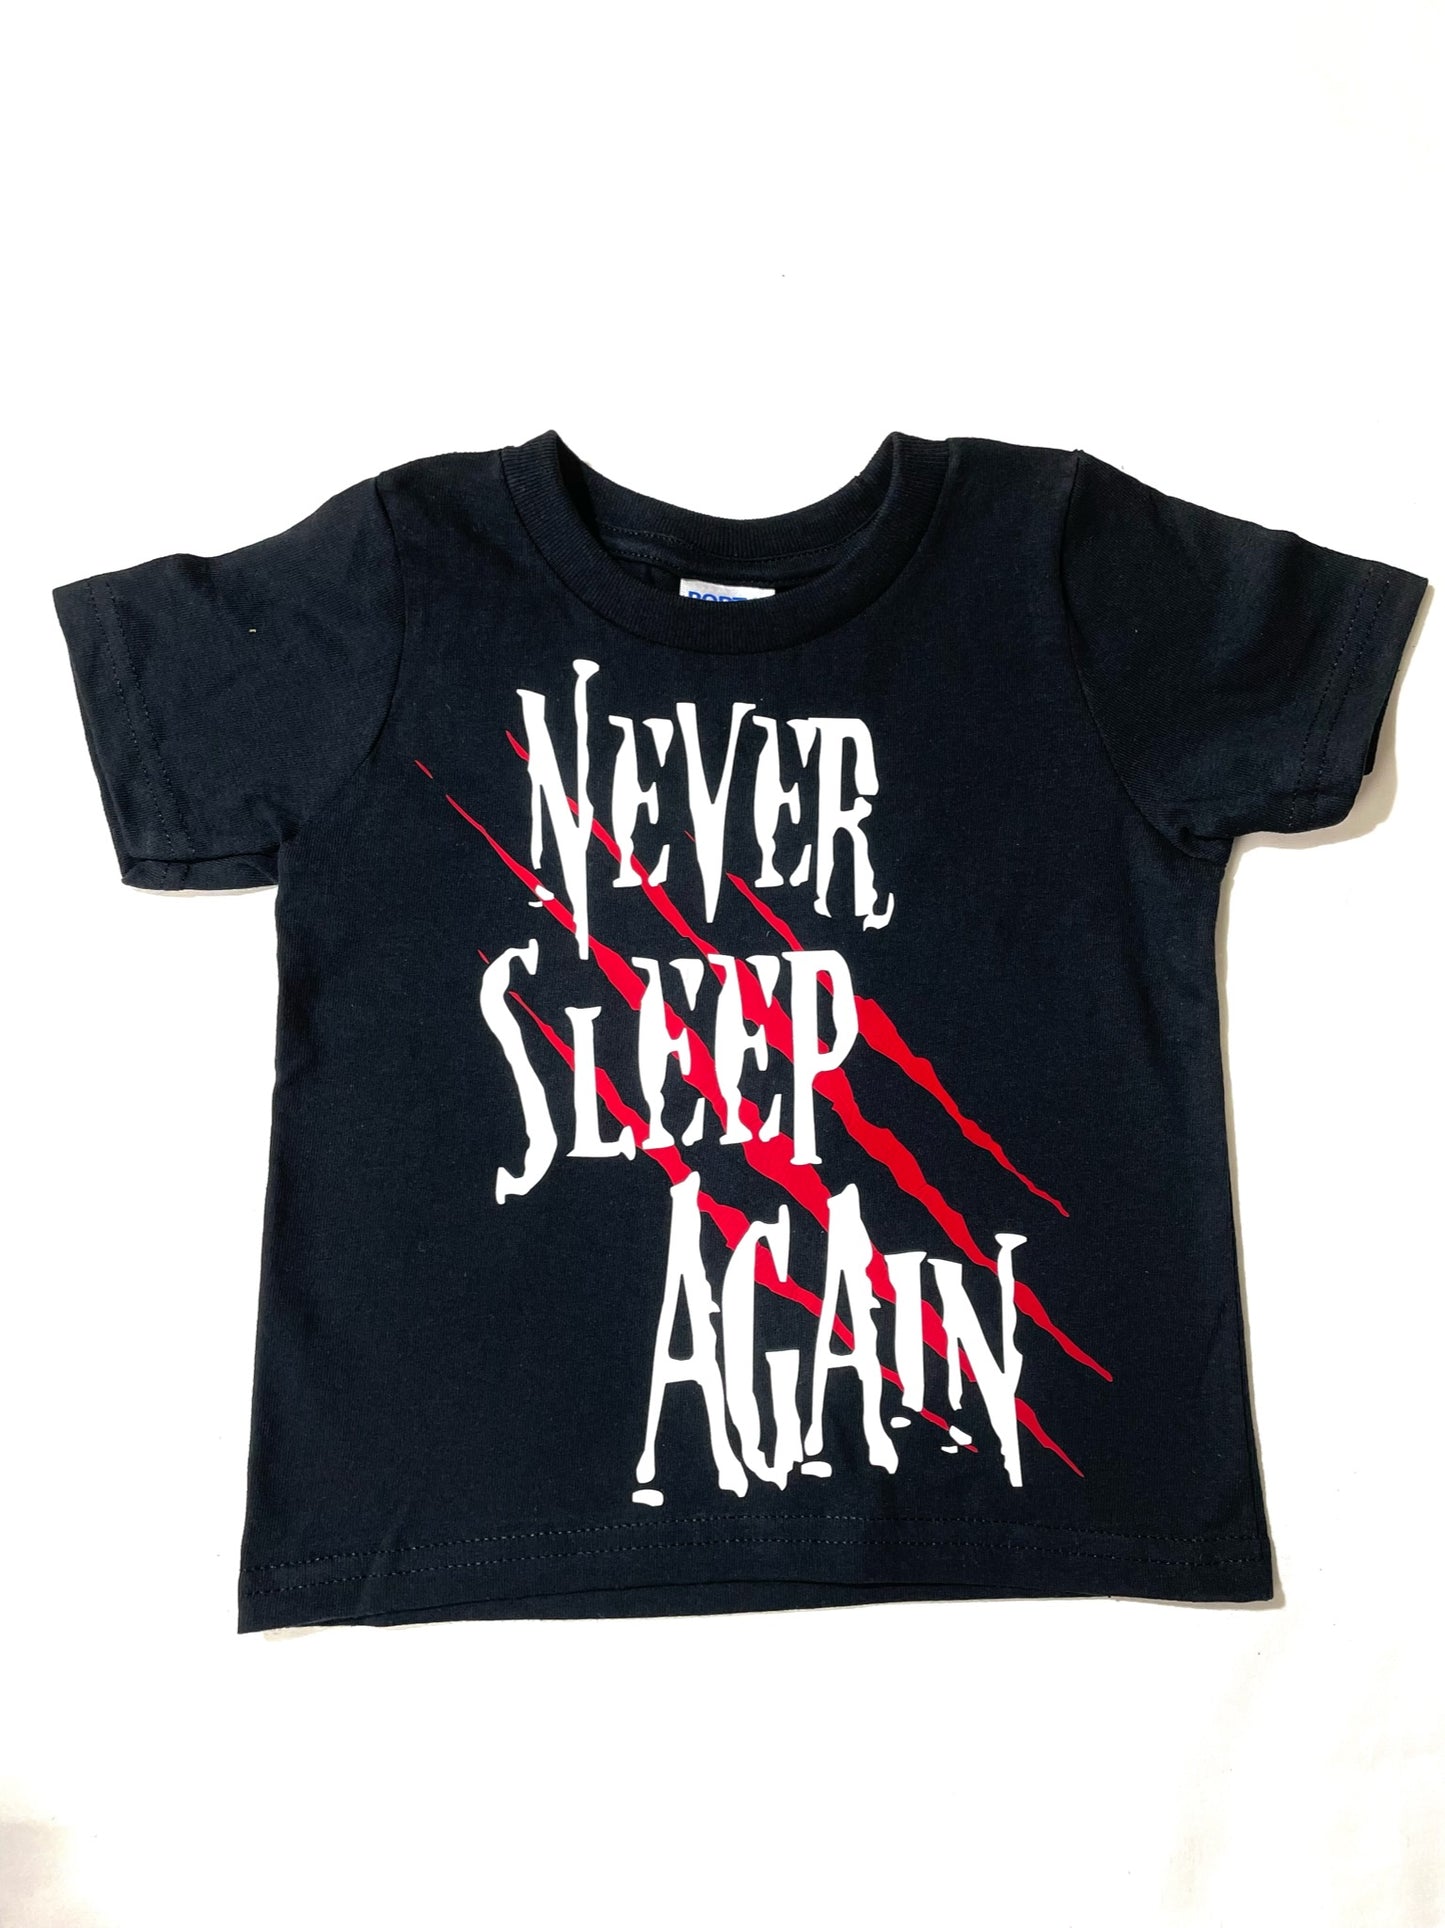 Never Sleep Again Nightmare Horror Kids/Baby Shirt